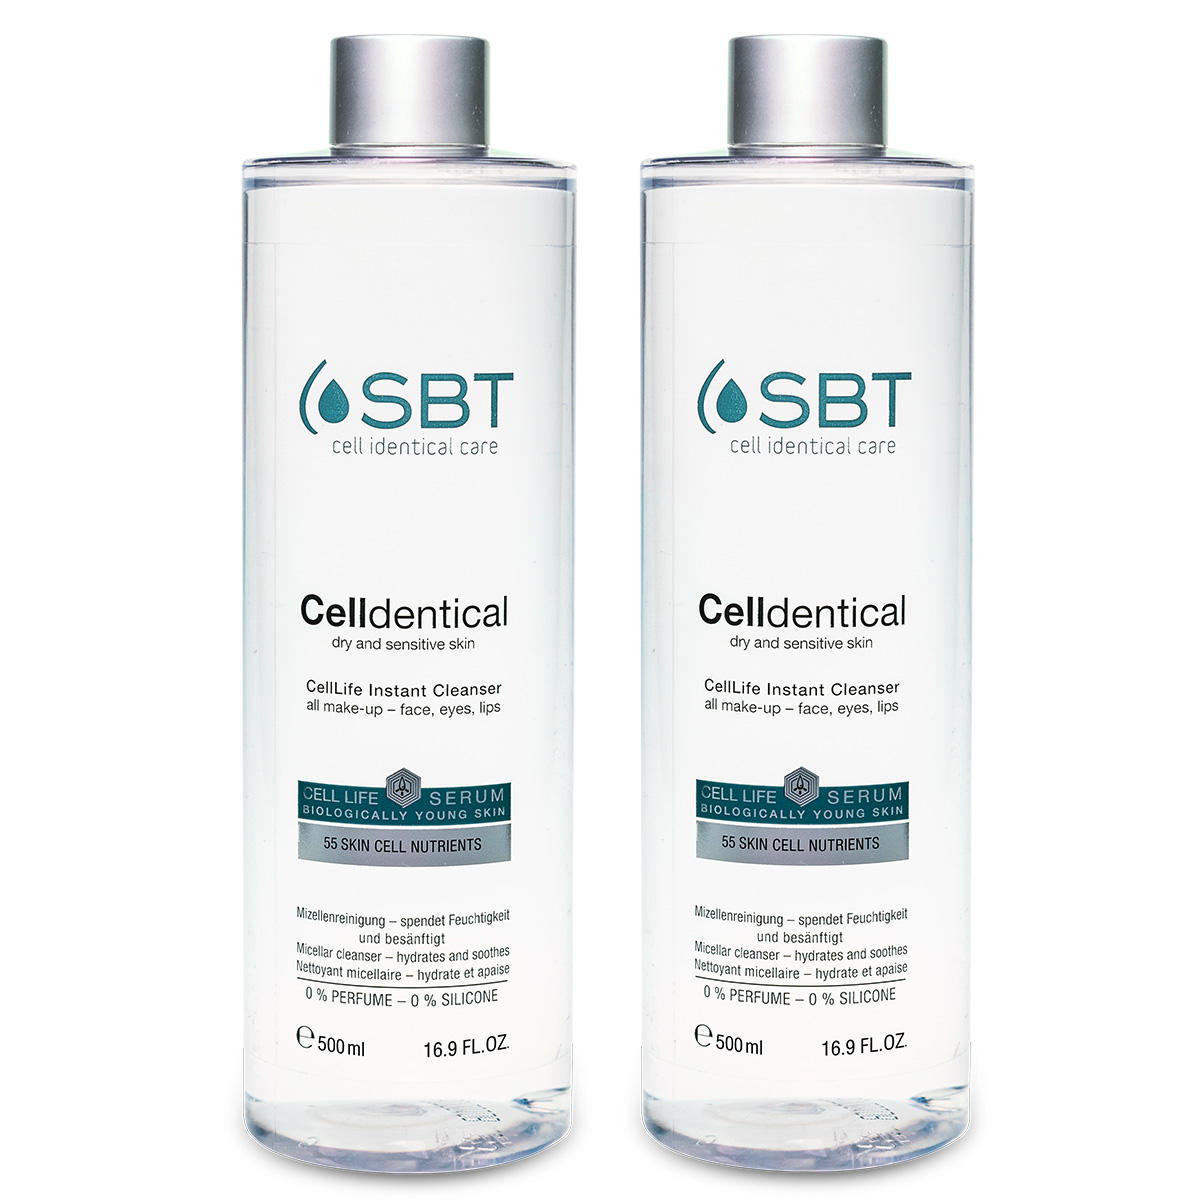 SBT Soluzione micellare Celldentical Duo  - 1